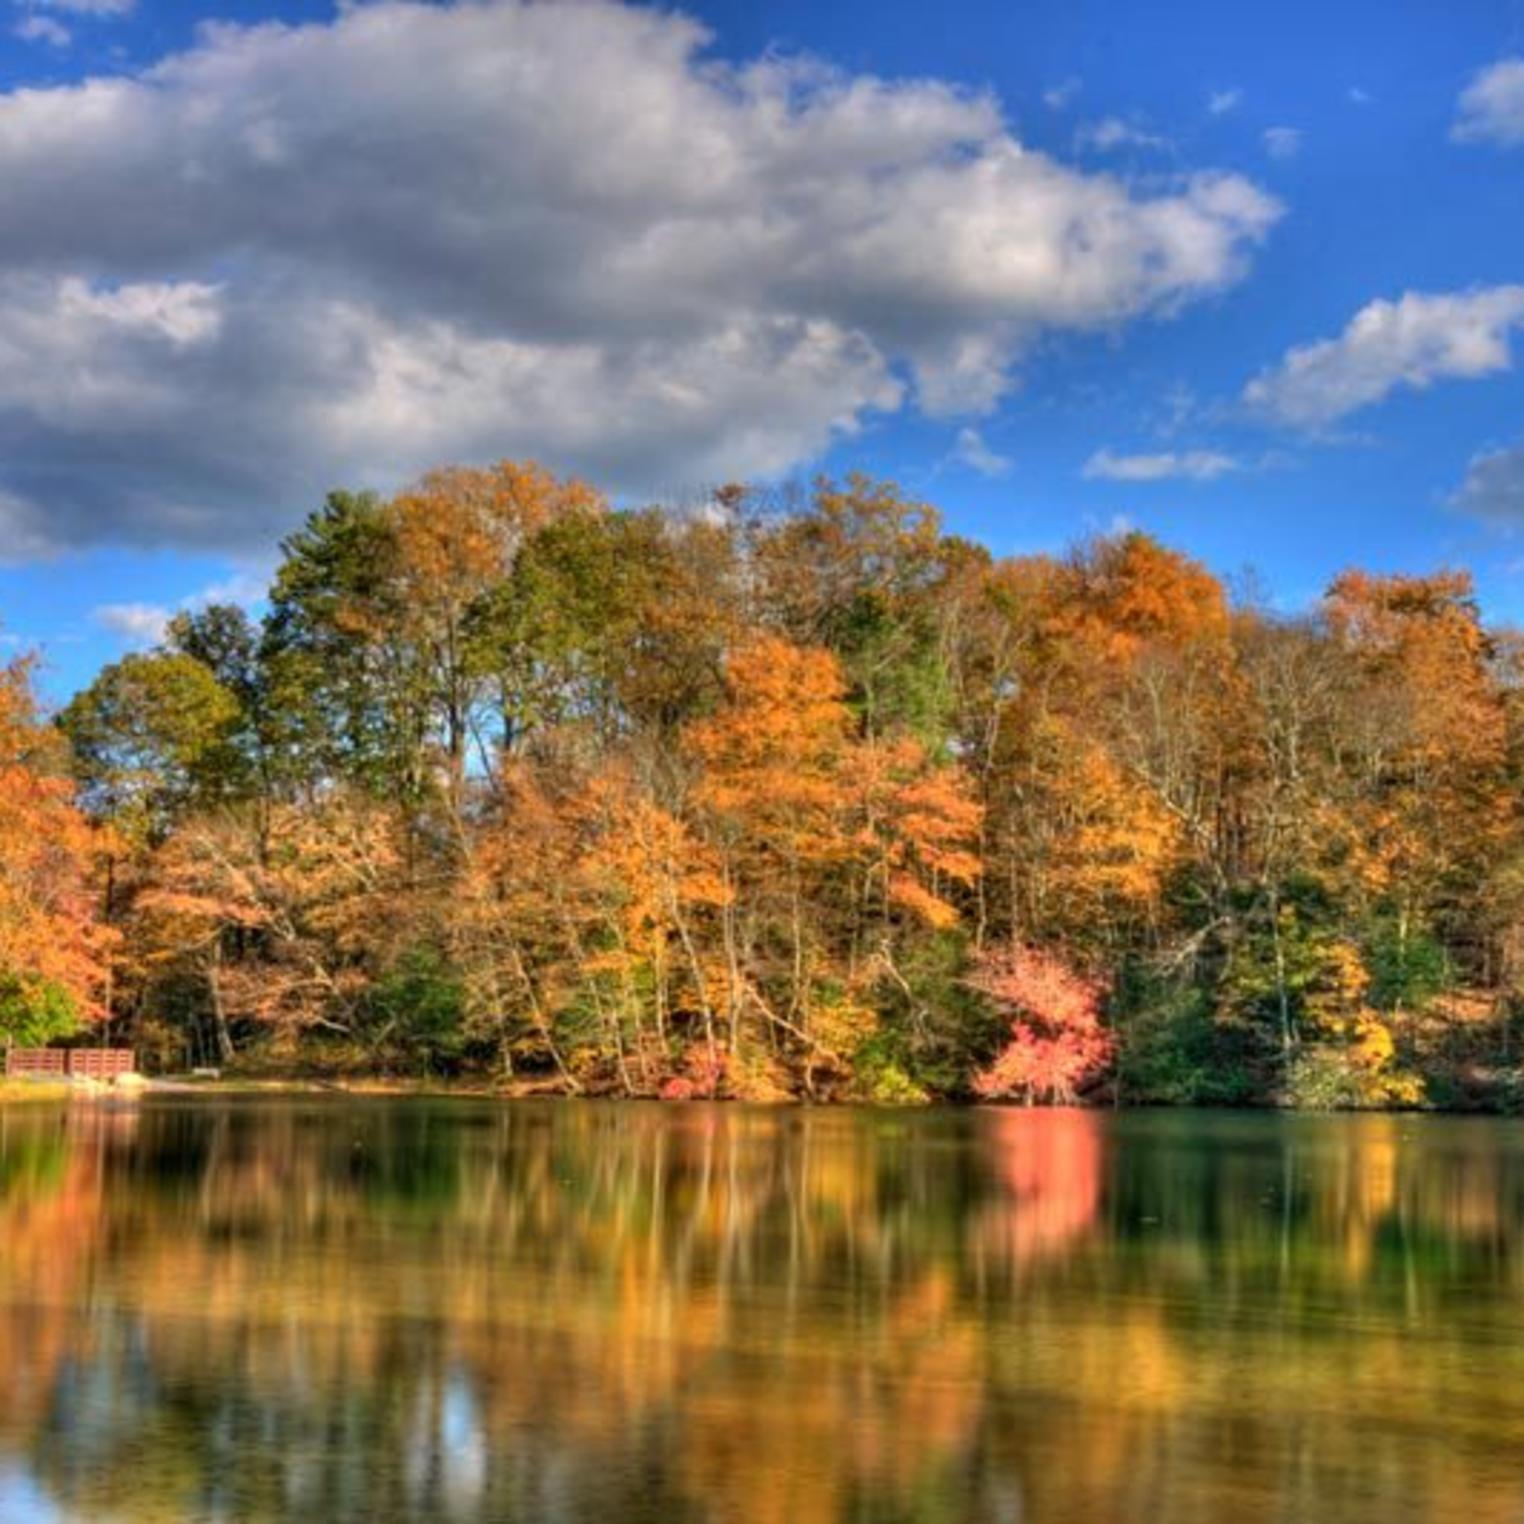 Autumn at Fuller Lake